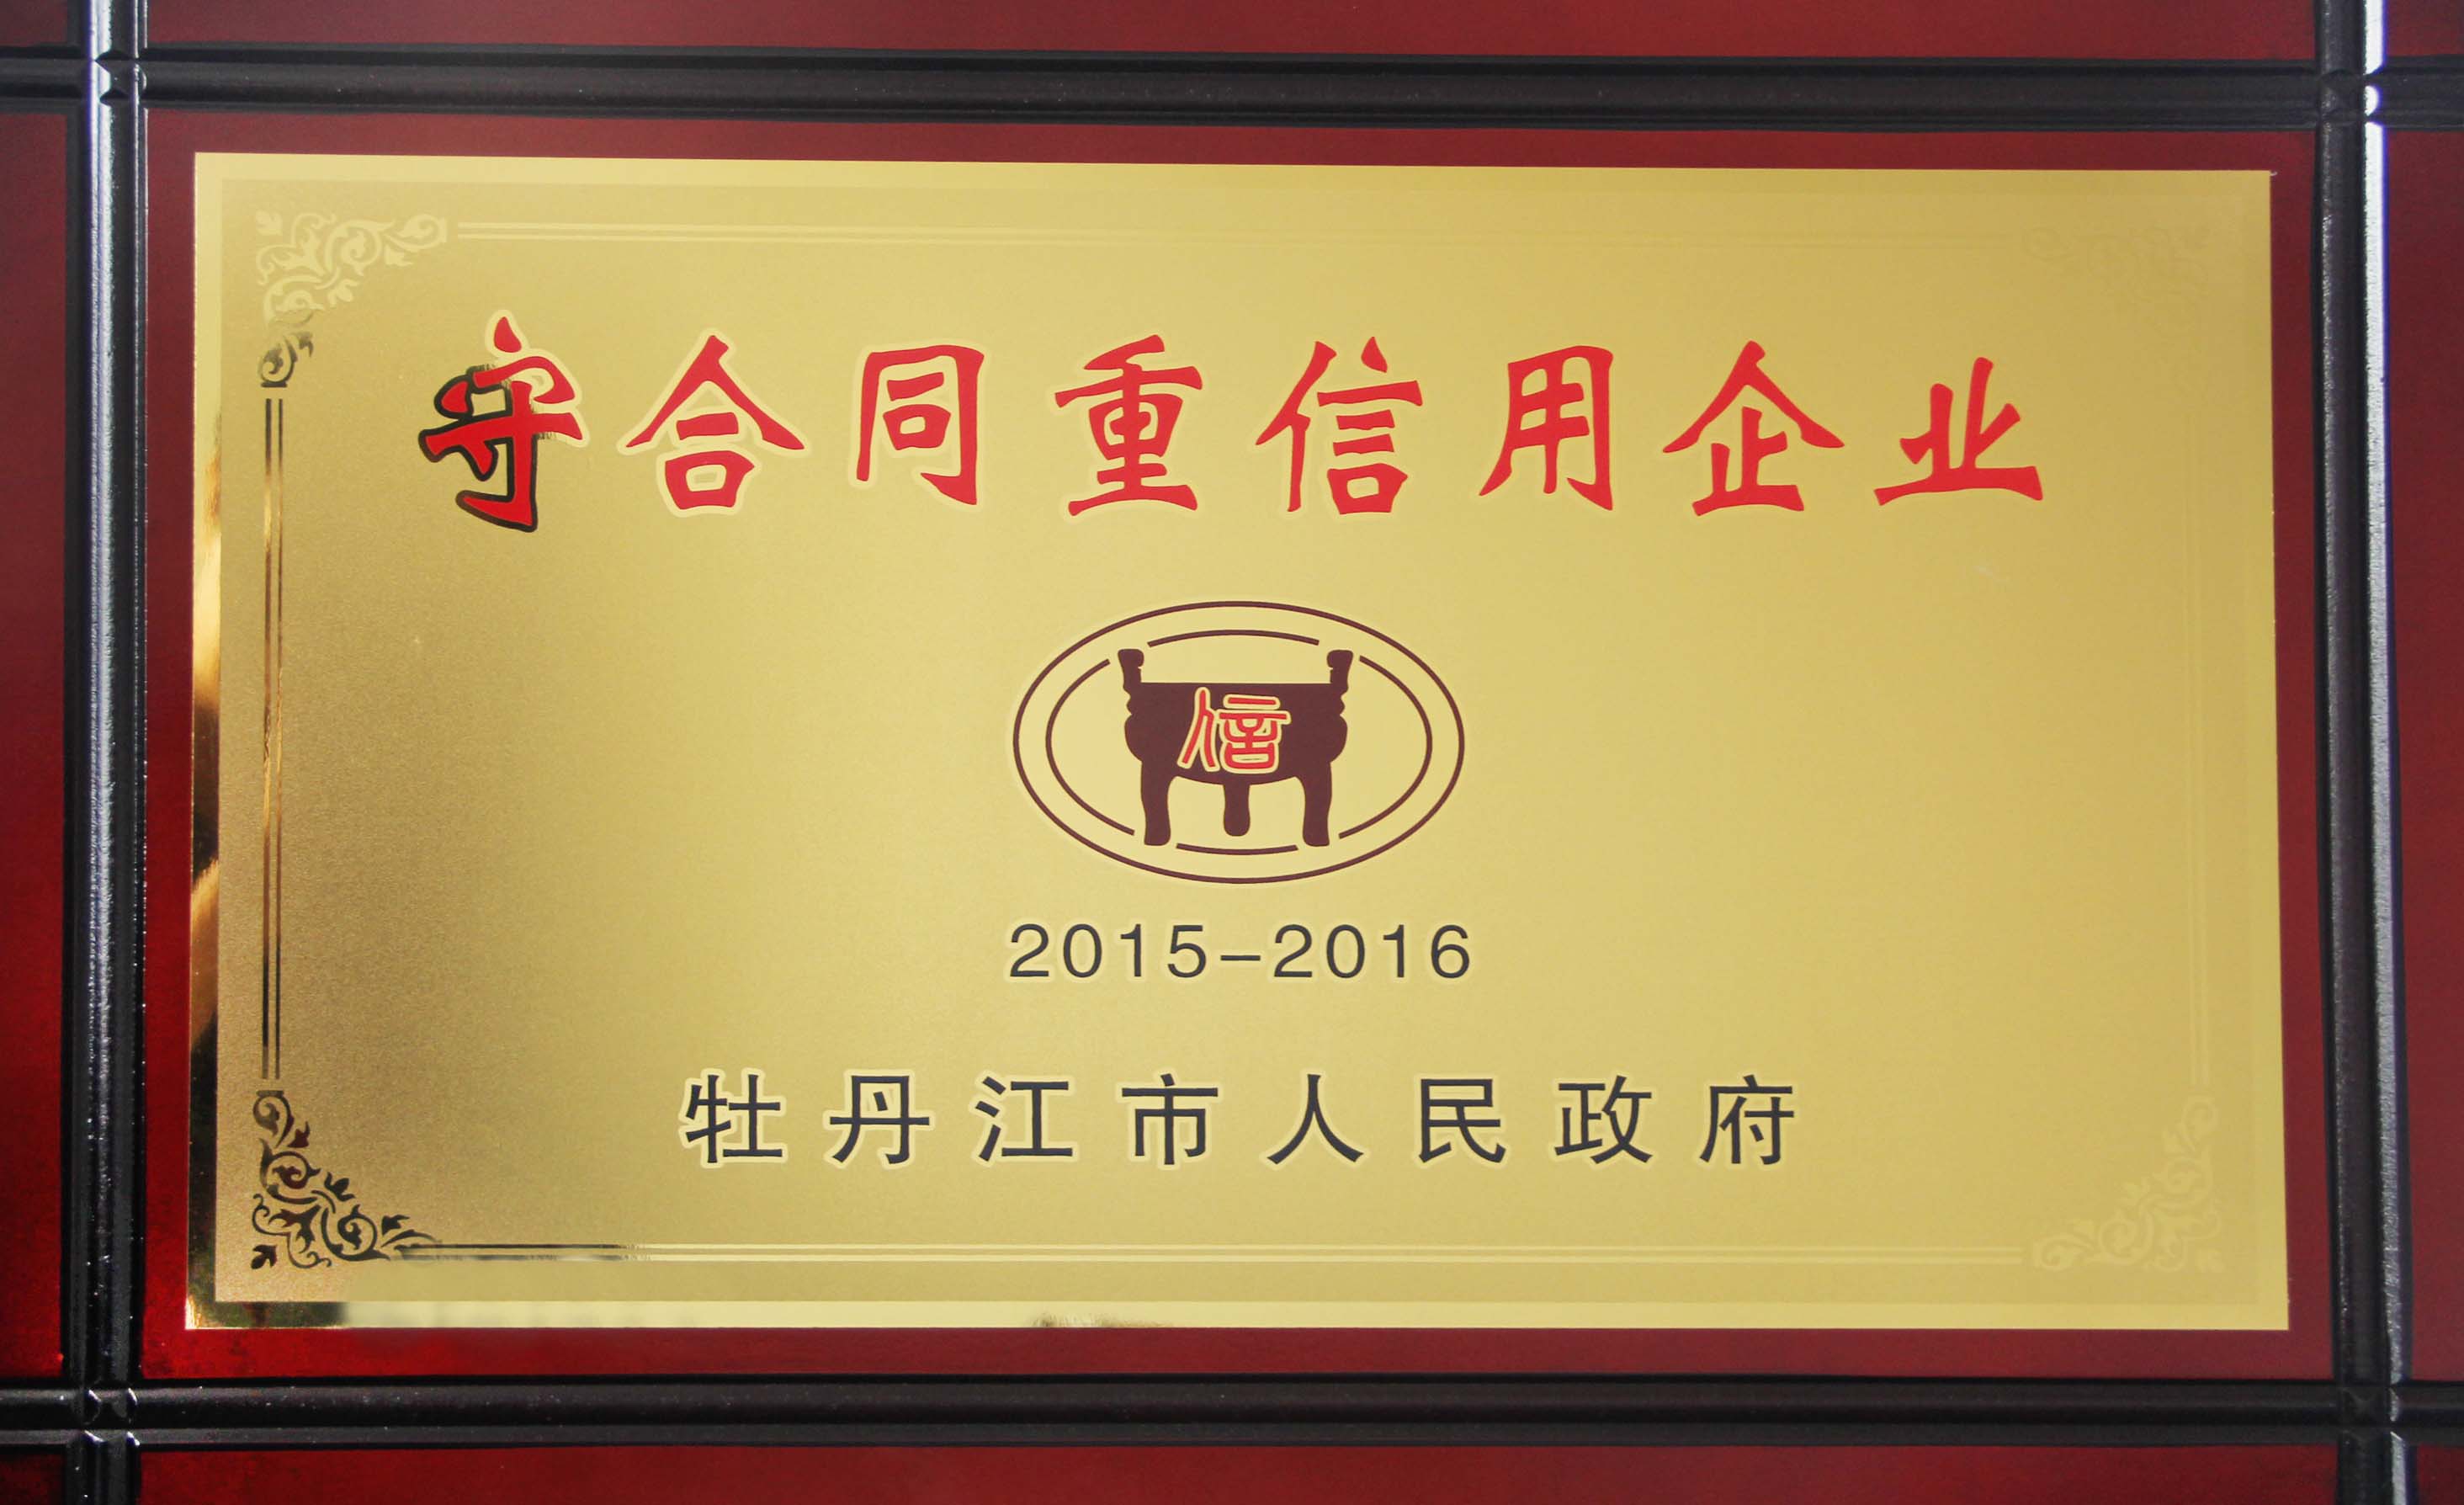 仁合堂藥業榮獲2015-2016年度守合同重信用企業